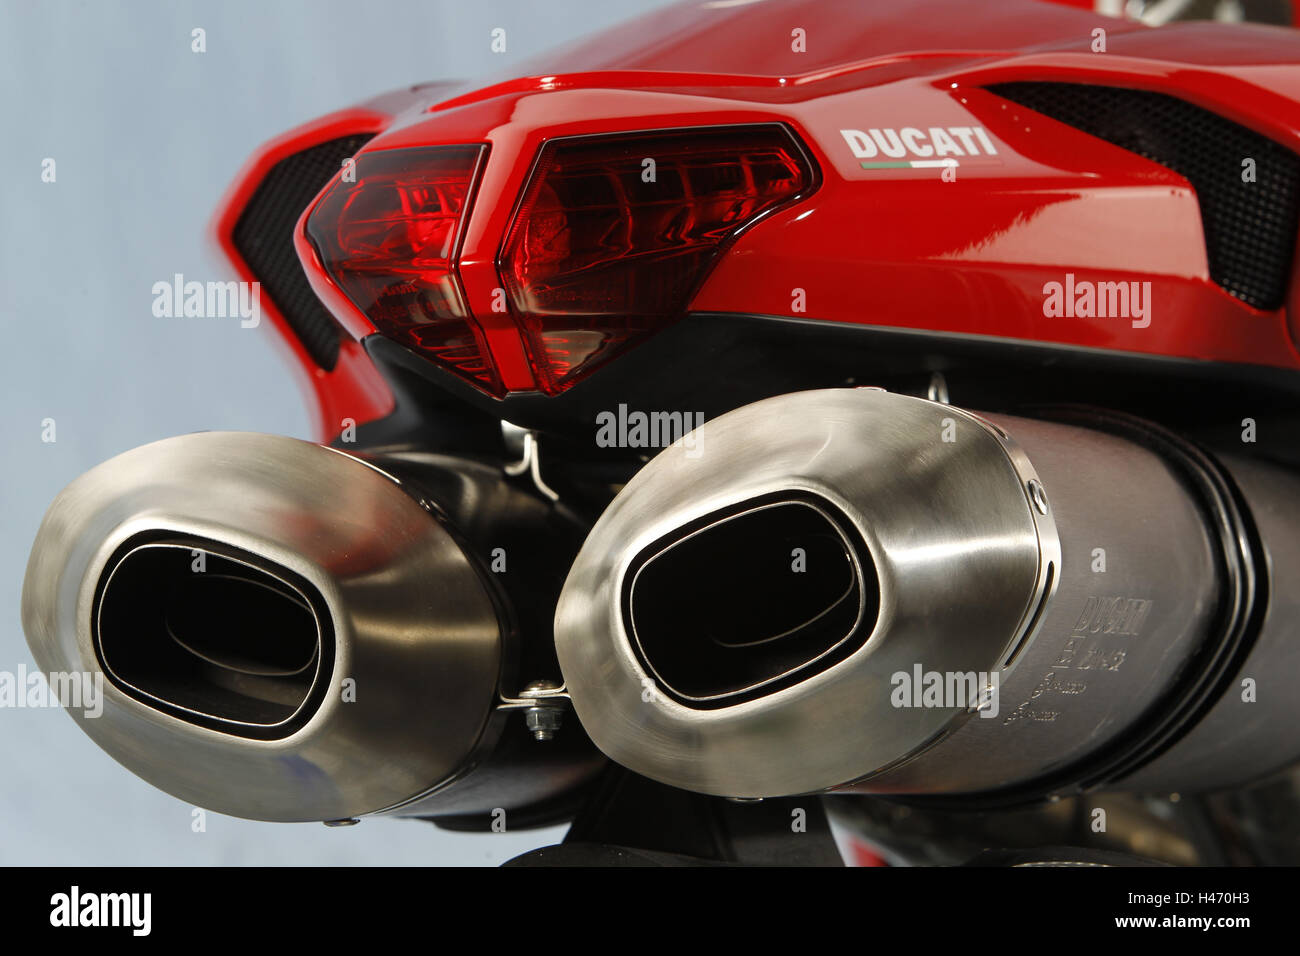 Motocicleta Ducati en 1198 SP, rojo, detalle trasero, tubos de escape, producción de estudio, Foto de stock